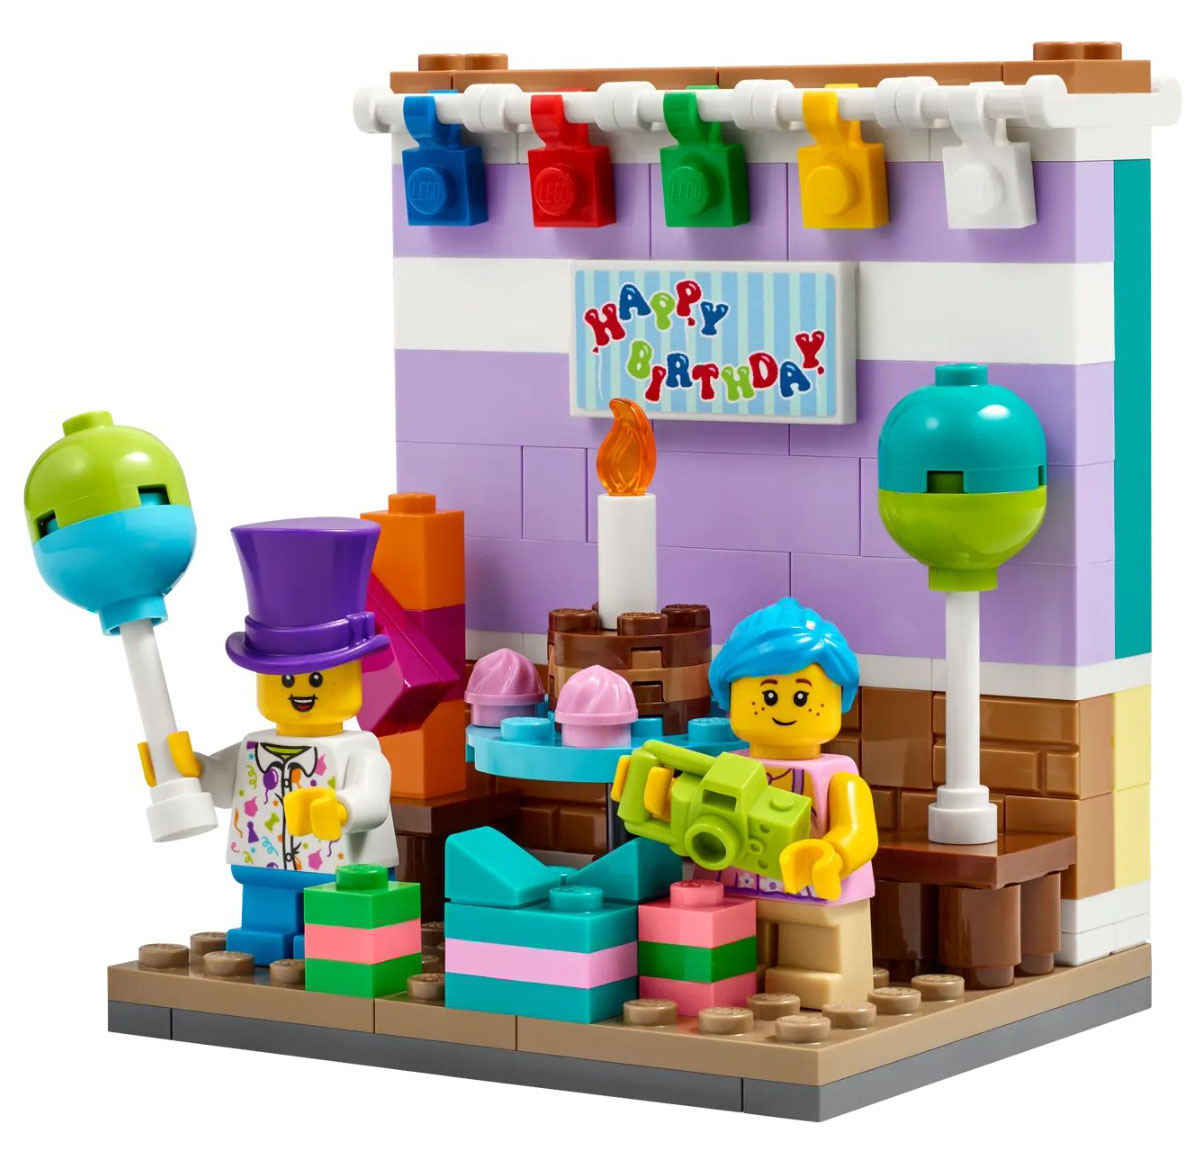 レゴ(R)イベントグッズ『40584 バースデーパーティー』新製品情報 | 誕生日プレゼントにおすすめのレゴ(R)セット